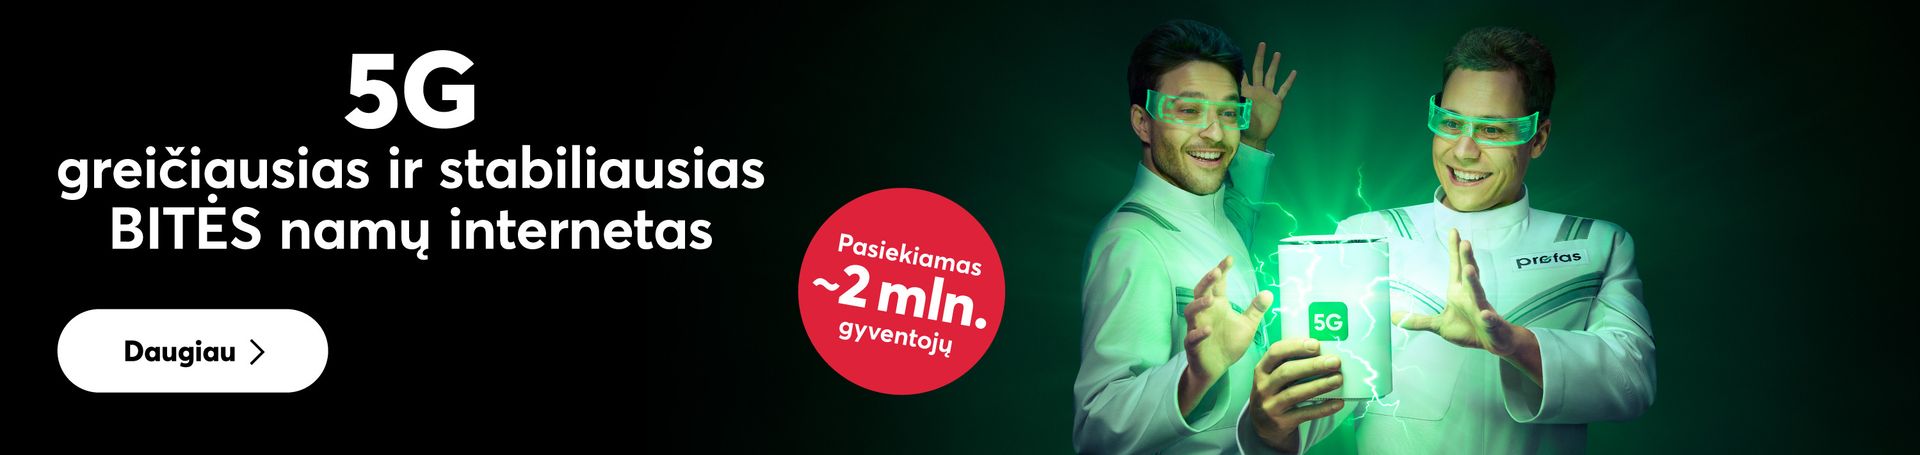 BITĖS 5G prieinamas jau beveik 2 milijonams Lietuvos gyventojų!